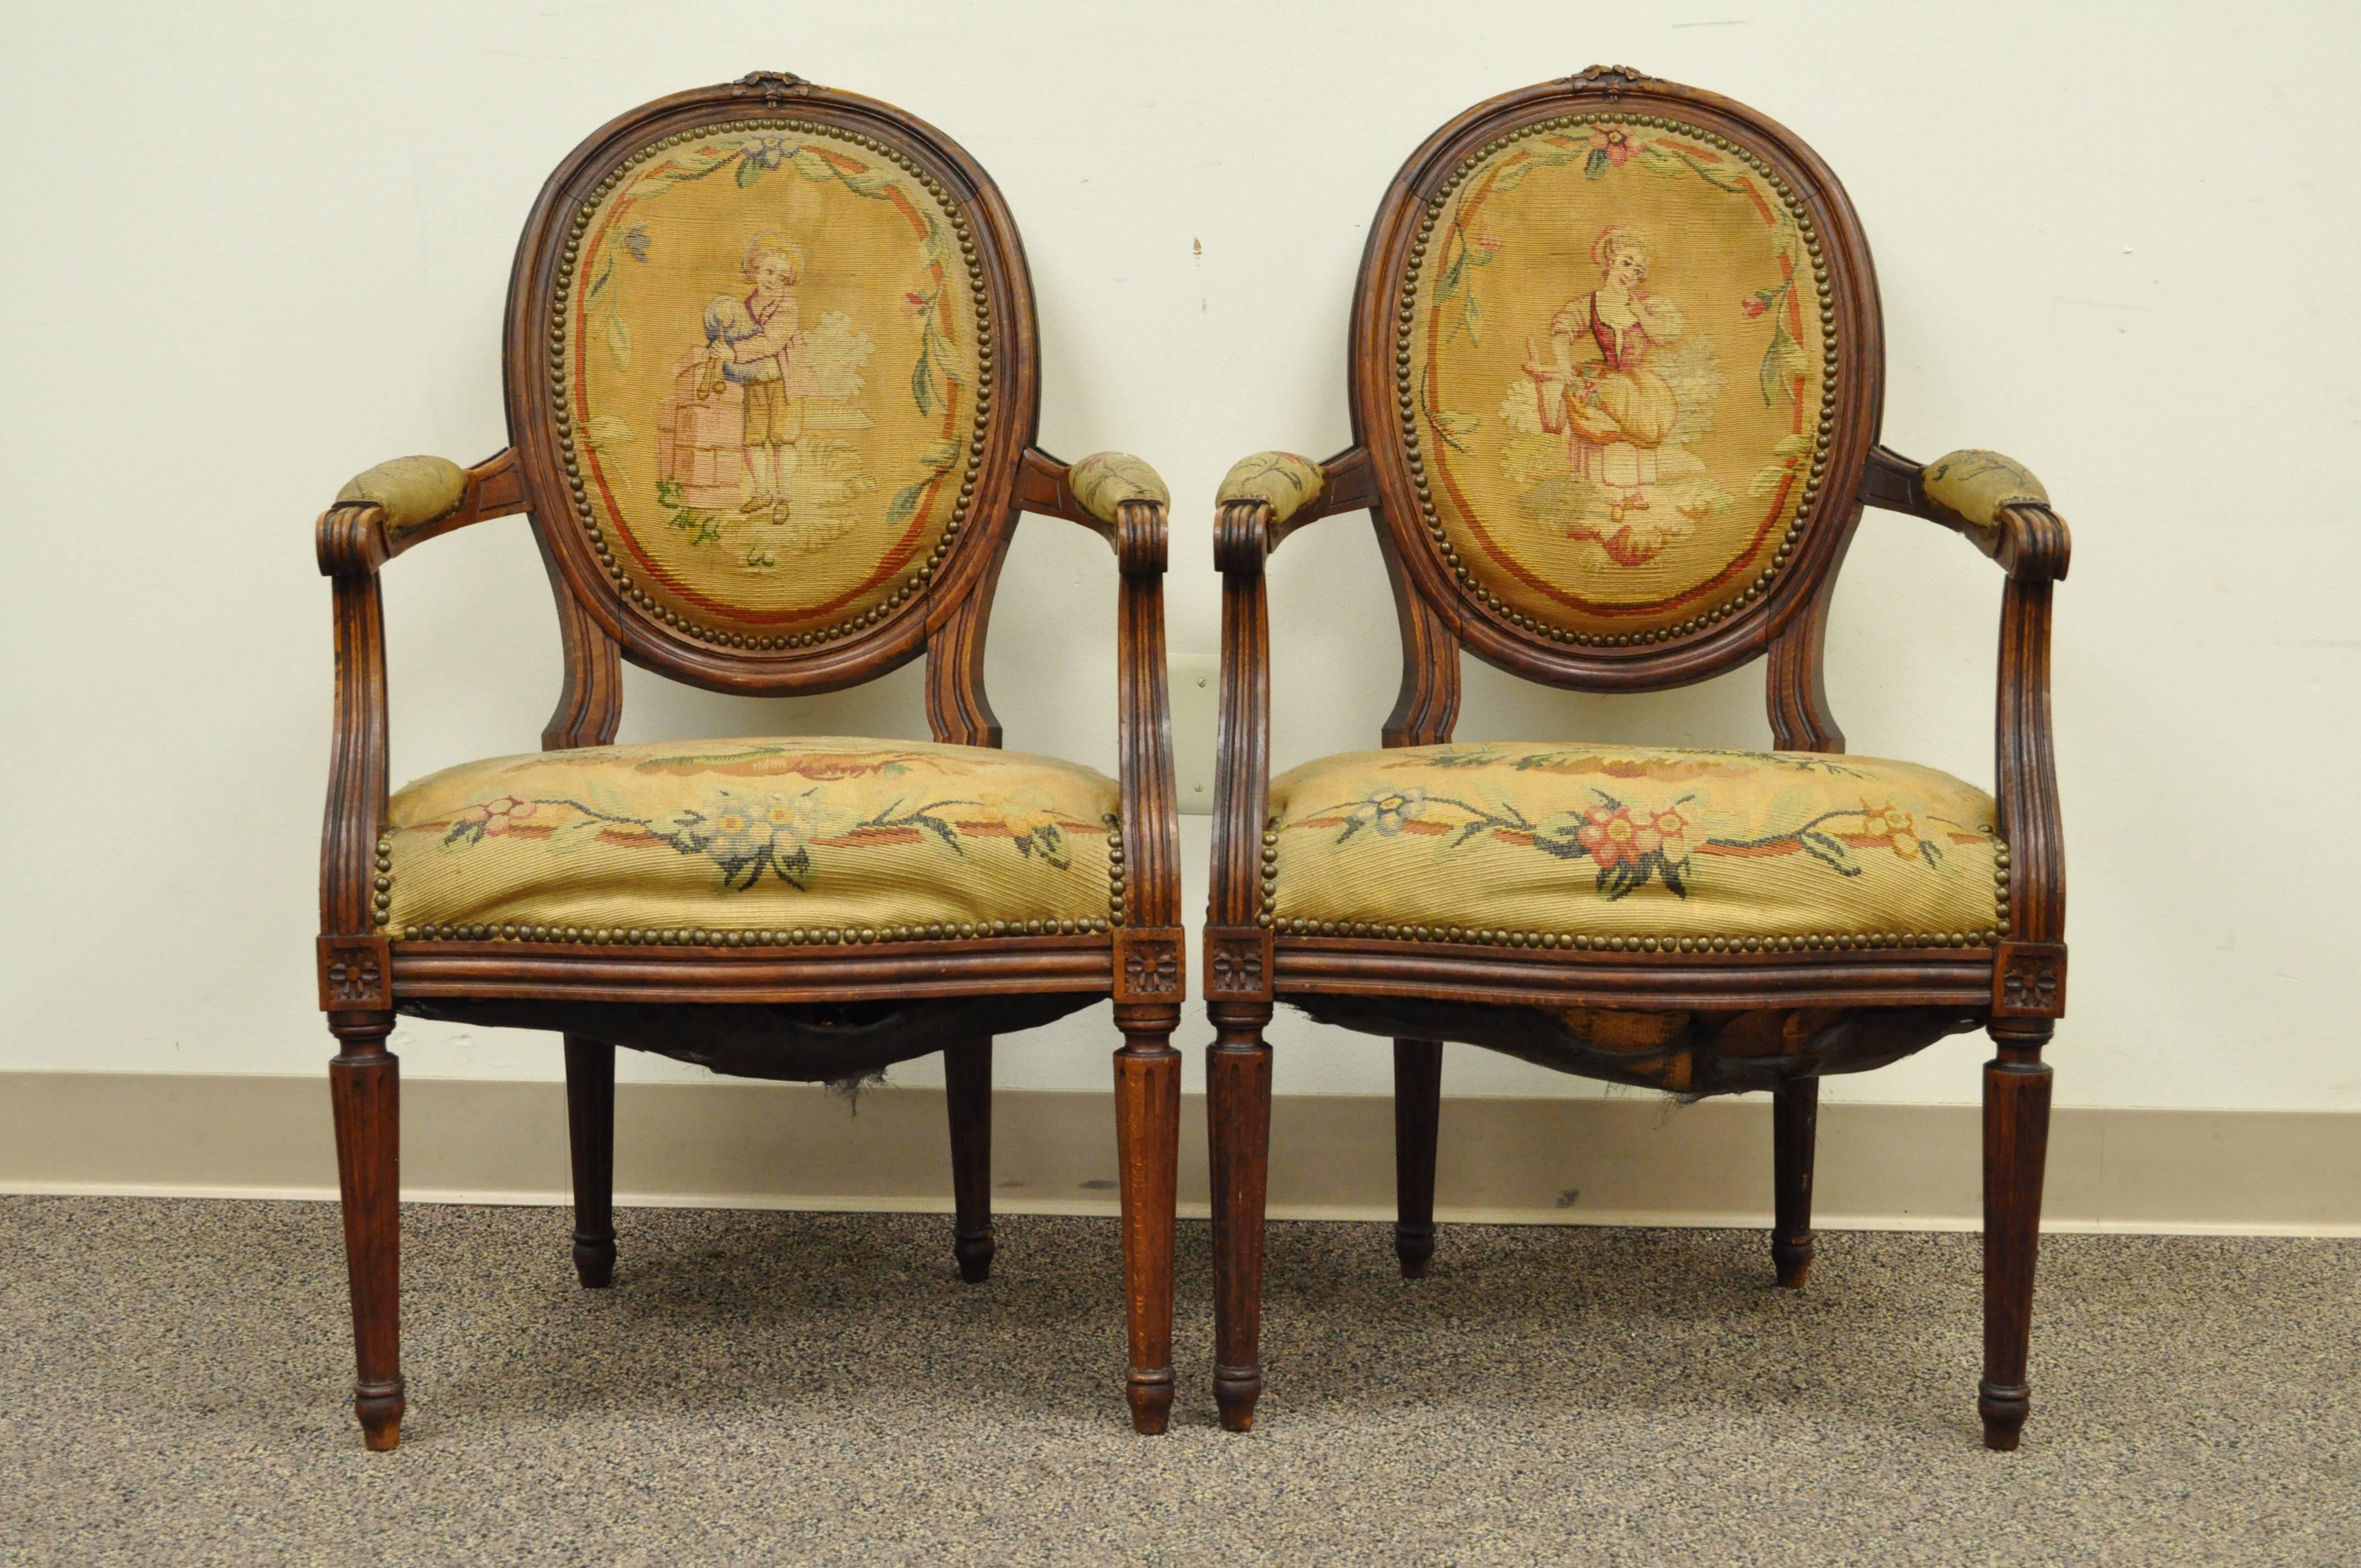 Paire de fauteuils français de style Louis XVI du XIXe siècle en noyer avec tapisserie à l'aiguille d'origine. Les chaises sont dotées d'accoudoirs rembourrés, de dossiers en canal, de sculptures en arc et de pieds cannelés. Chaque chaise a des